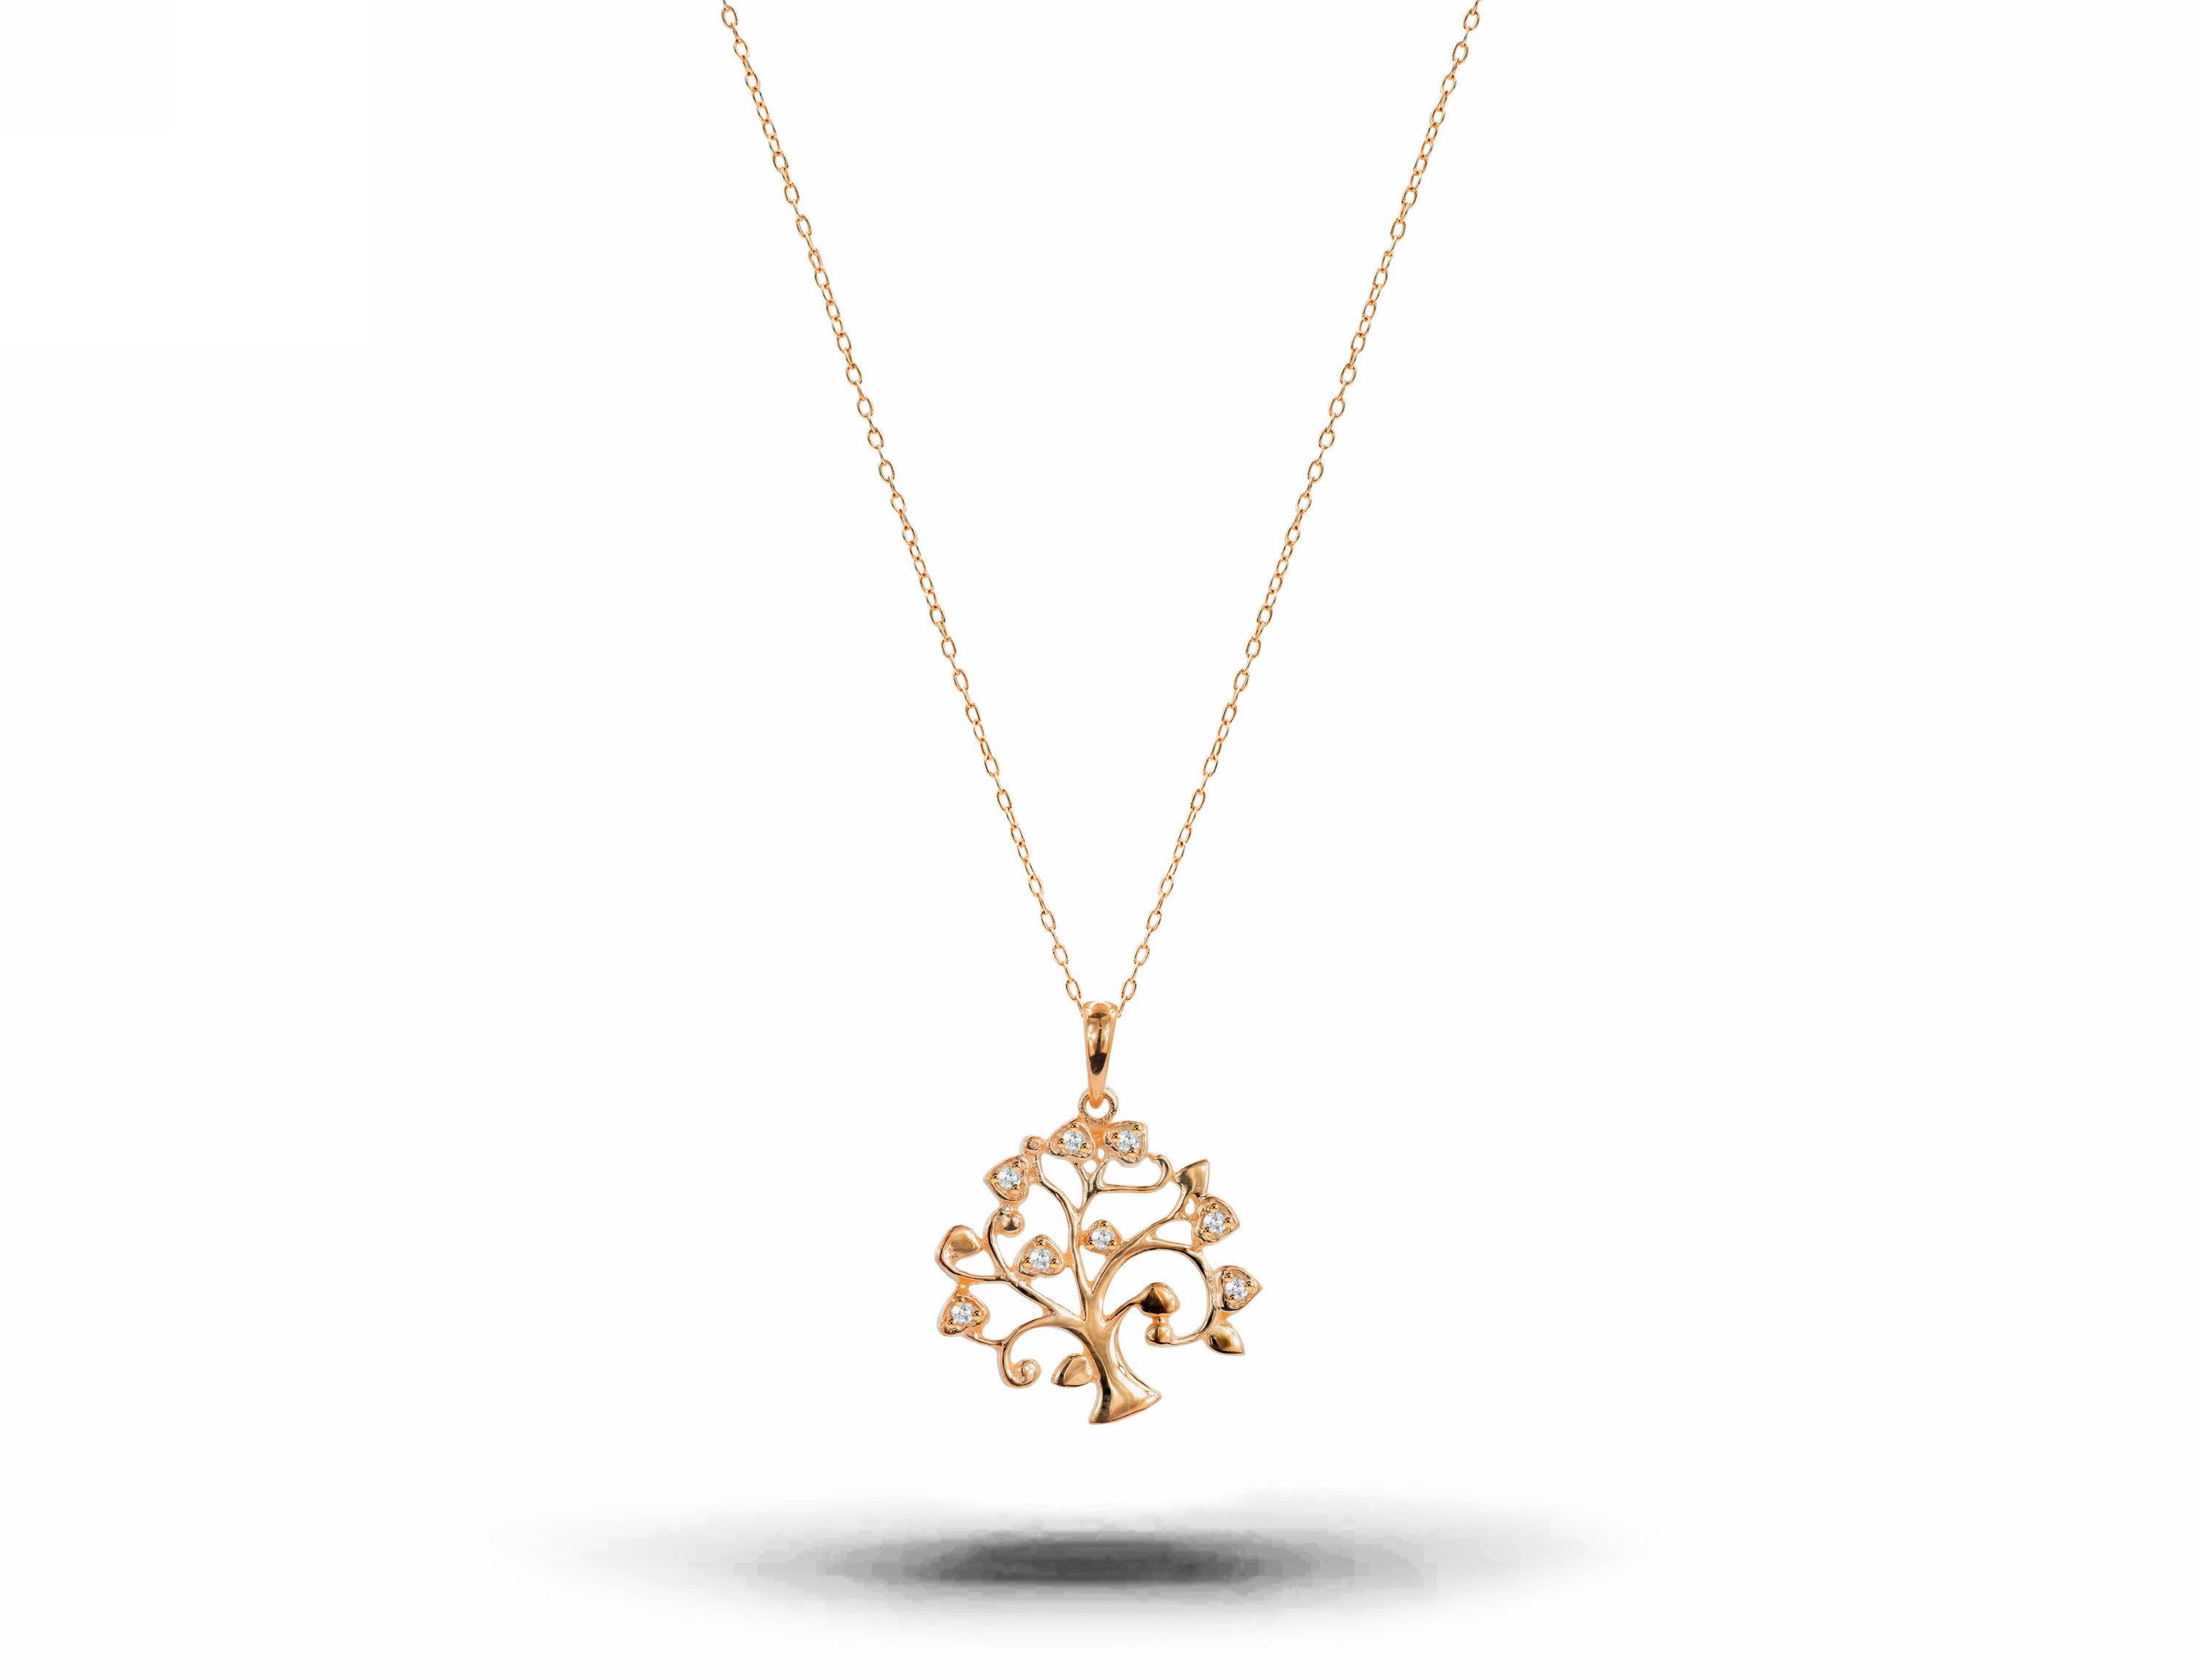 18 Karat Gold Halskette mit Anhänger Baum des Lebens Diamant Spiritual Delicate Halskette